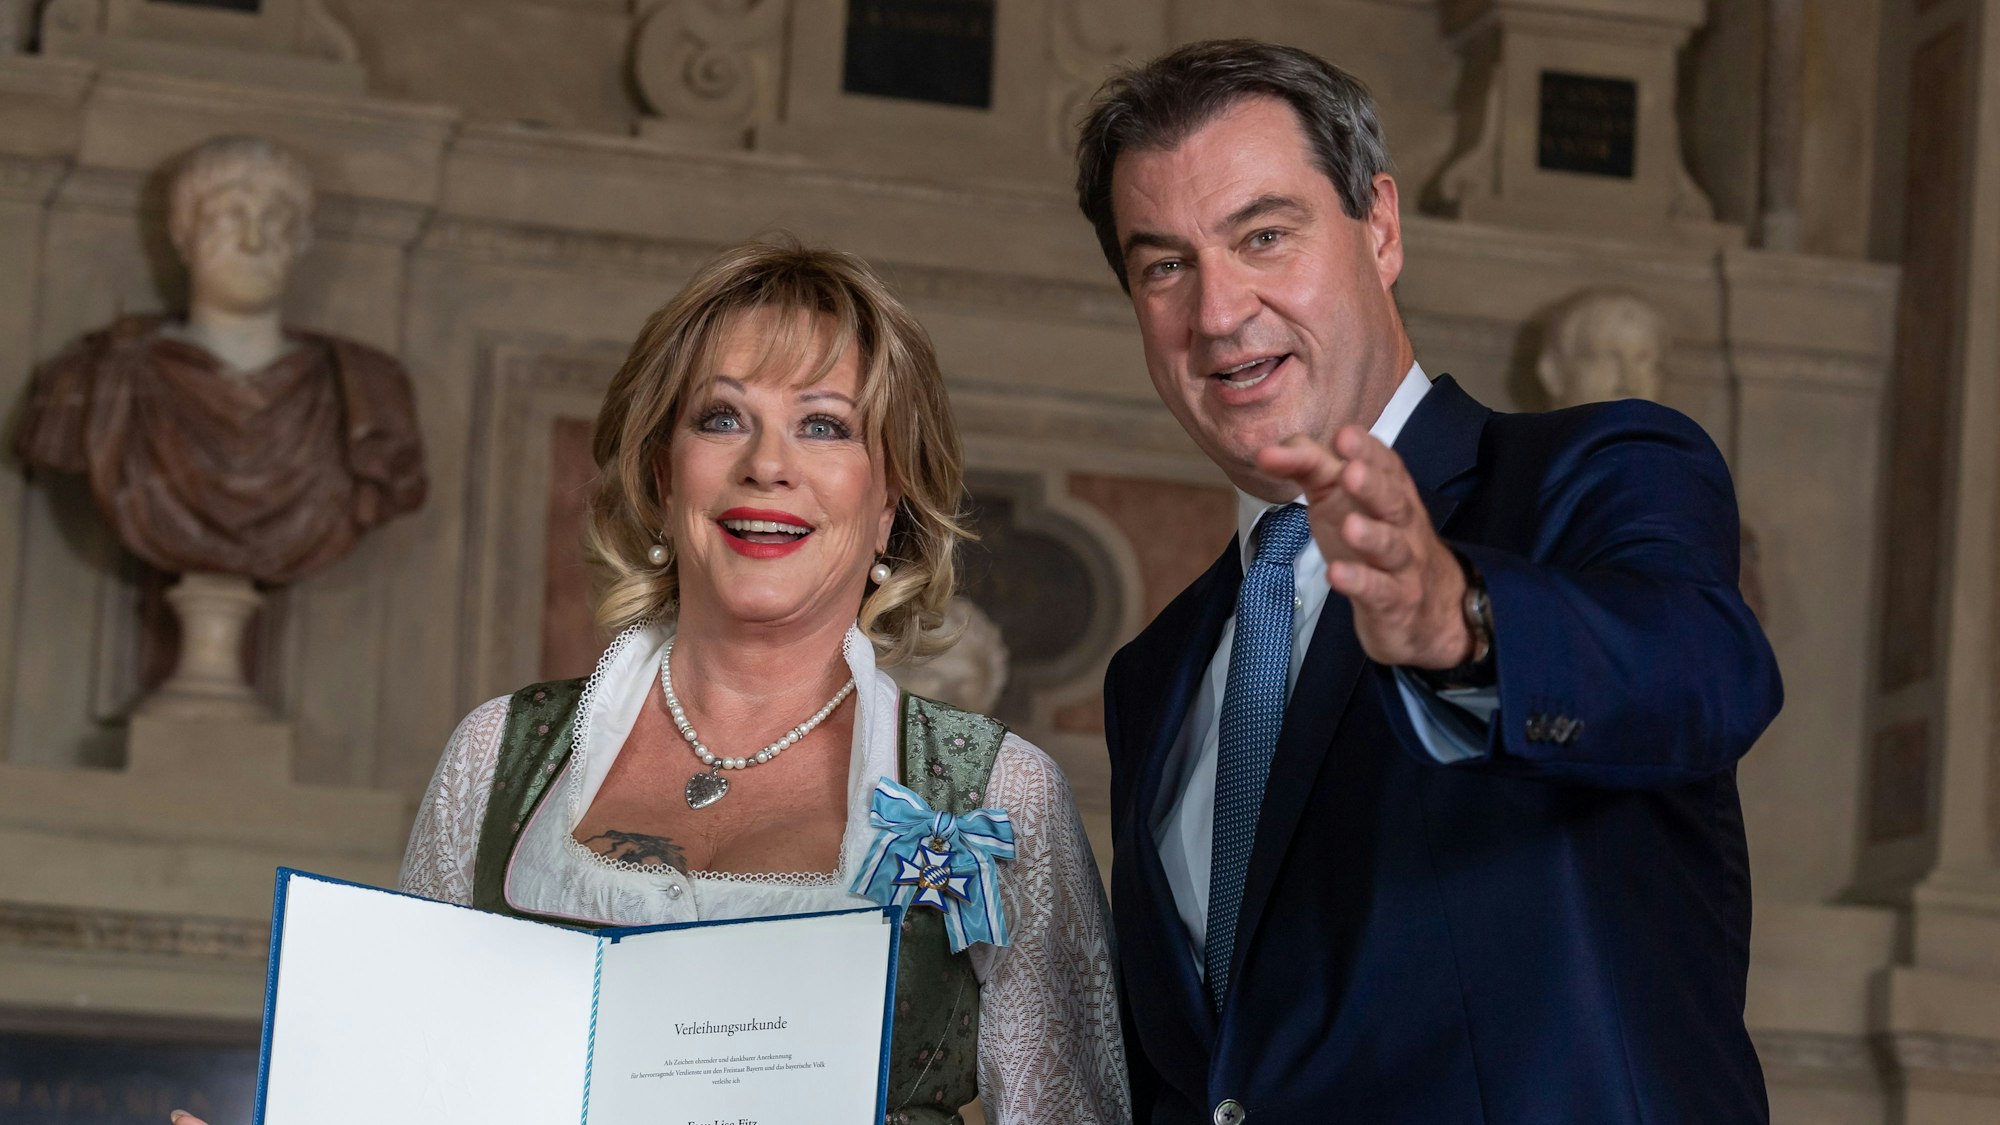 Die Schauspielerin Lisa Fitz aus der Ortschaft Hebertsfelden bekommt von Markus Söder (CSU), Ministerpräsident von Bayern, den bayerischen Verdienstordens überreicht.